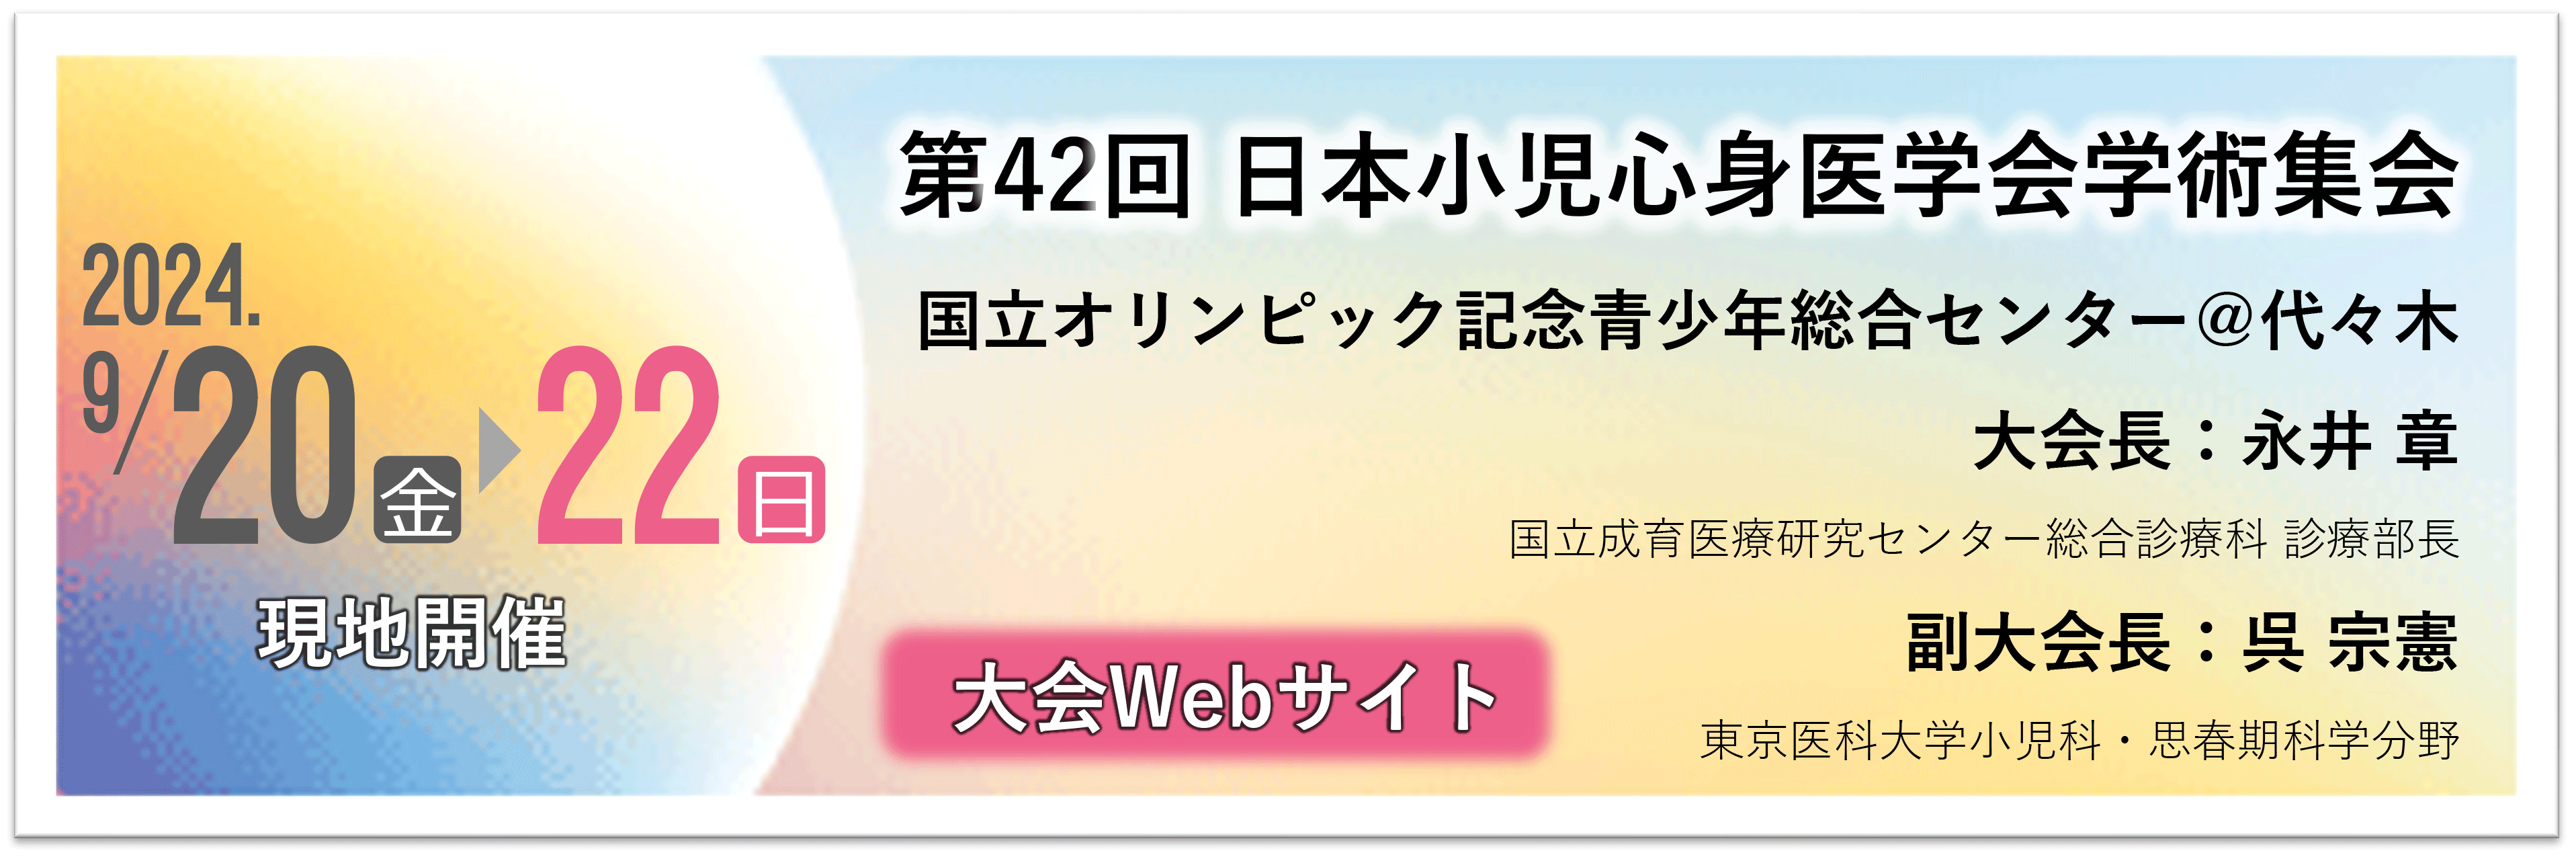 第42回 日本小児心身医学会学術集会